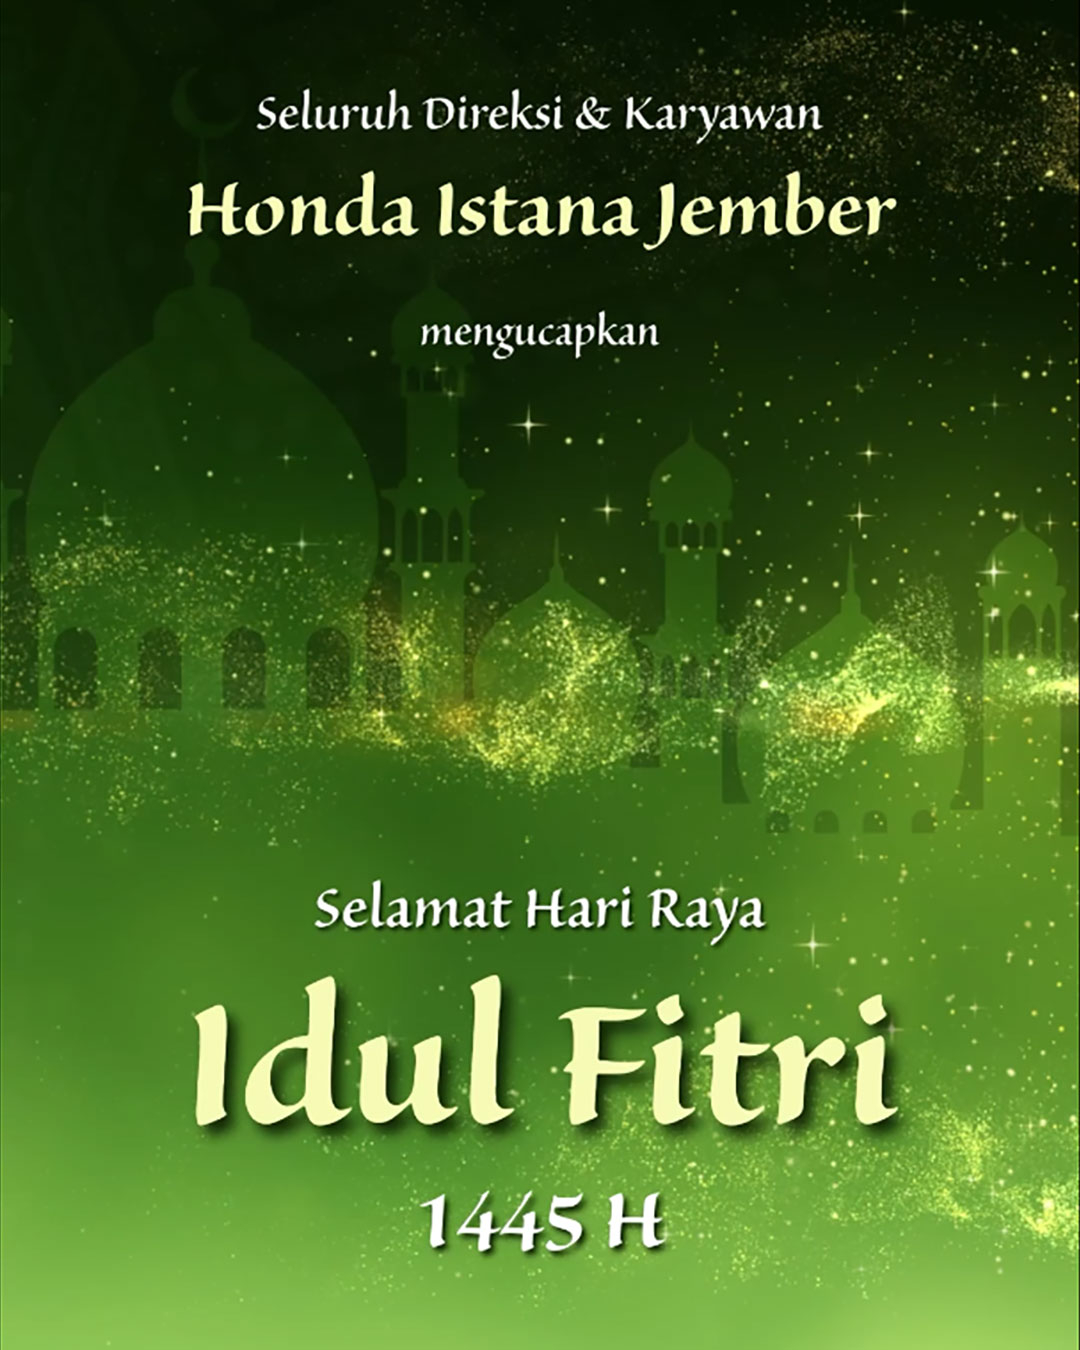 Selamat Hari Raya Idul Fitri 1445 H